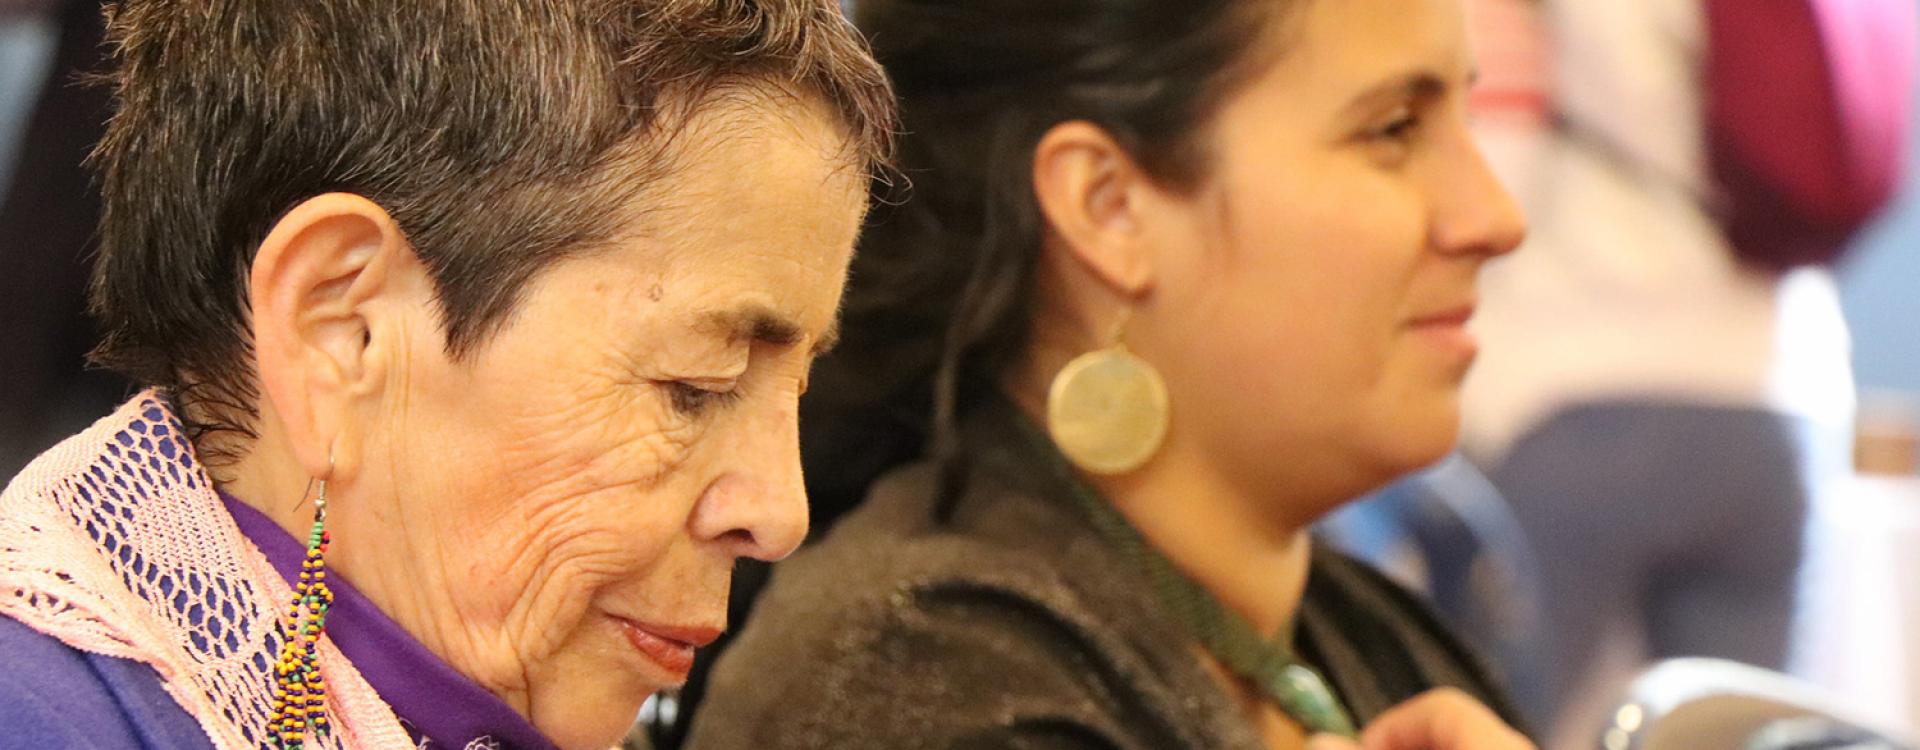 Bogotá nos cuida: cuidado comunitario, envejecimiento y vejez